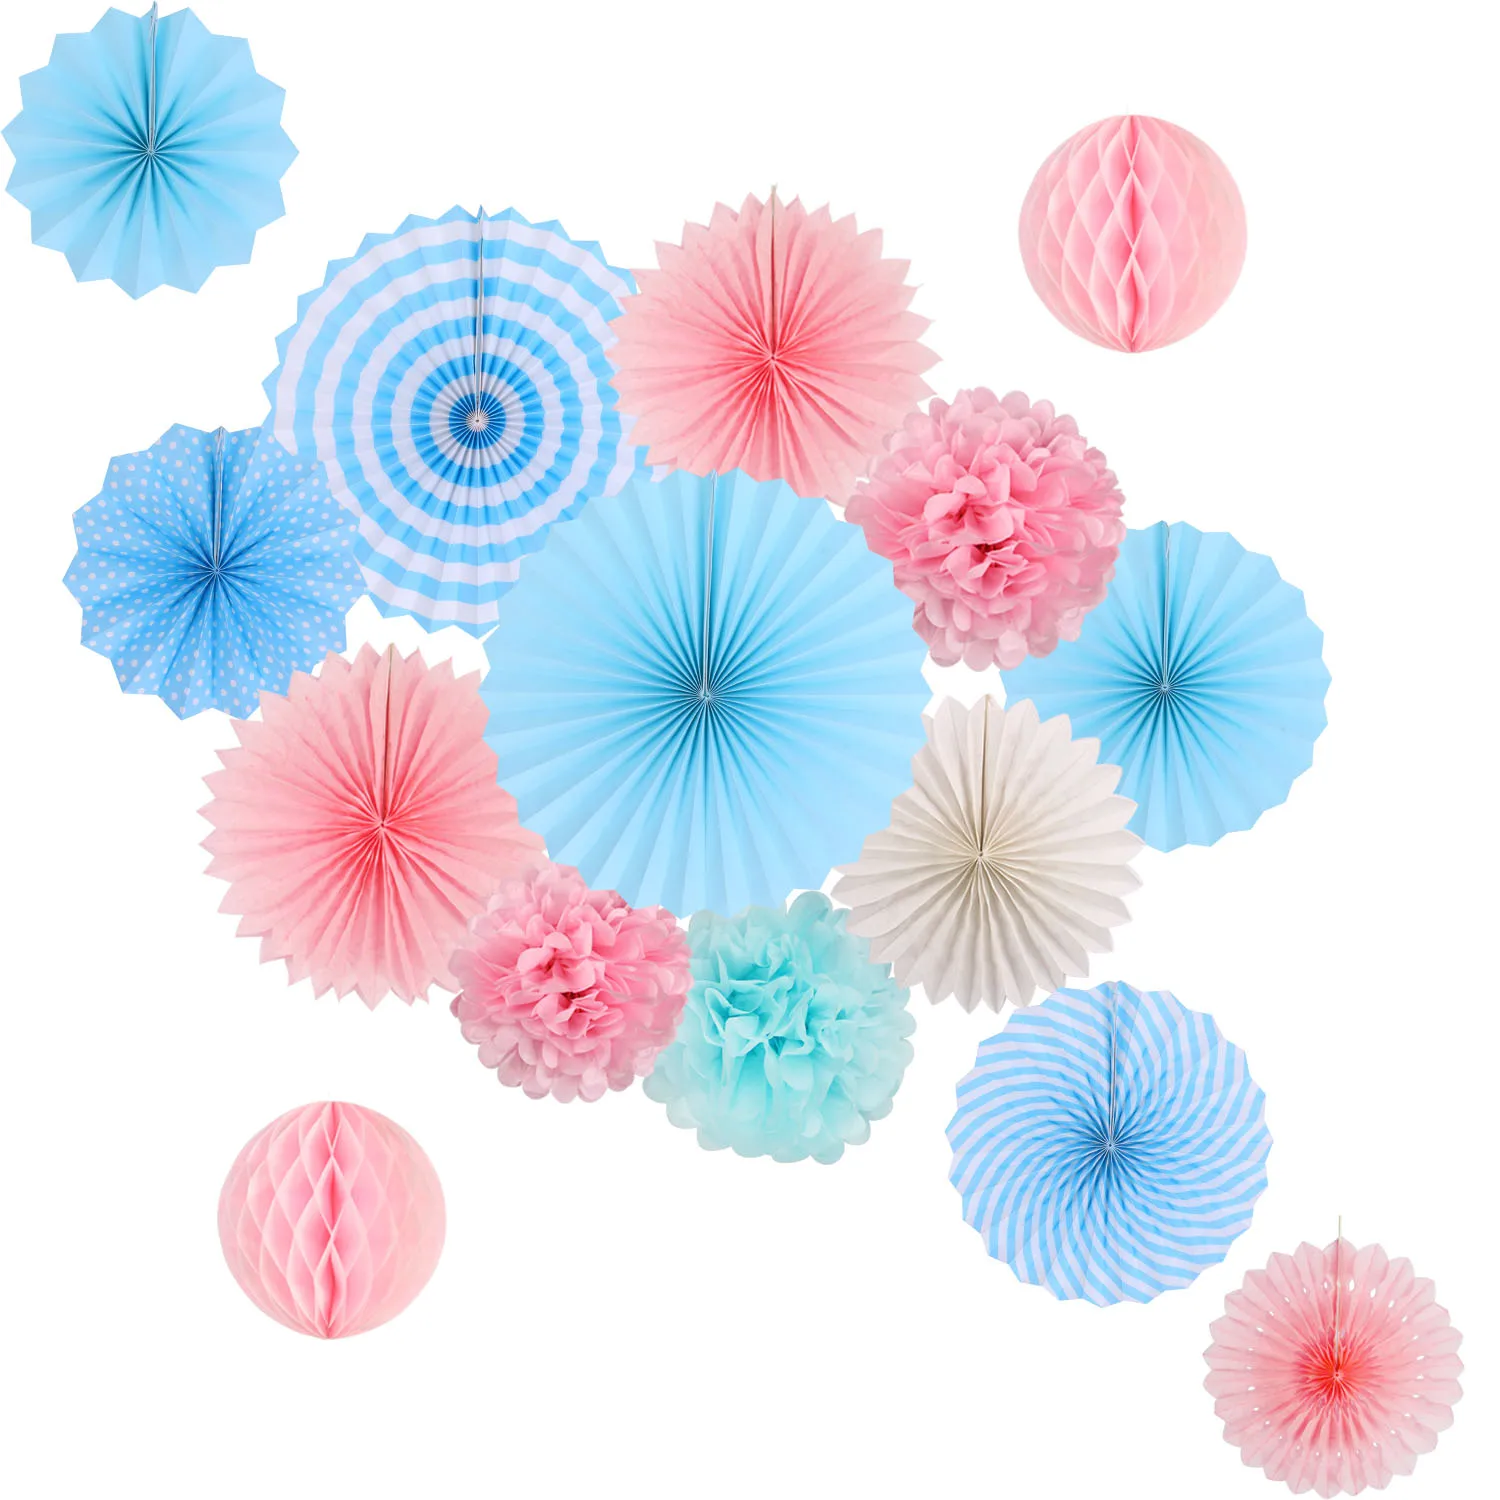 Zilue висящие украшения для вечеринки набор папиросная бумага веер бумага помпоны цветы для дня рождения девичник офисные вечерние украшения - Цвет: Pink Blue